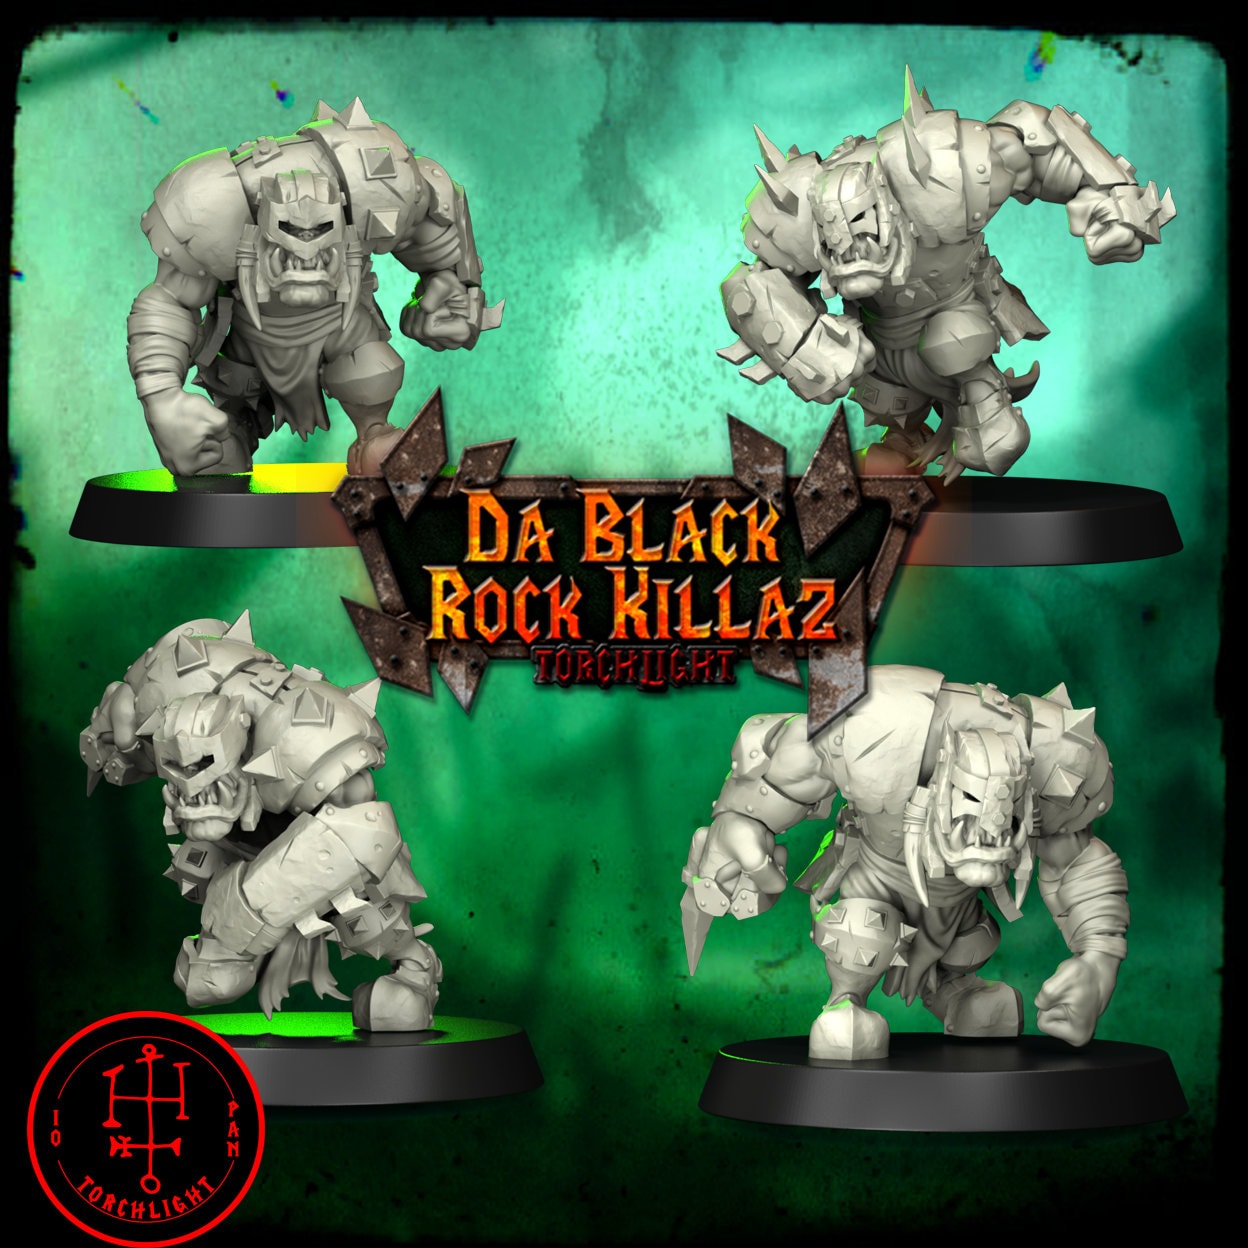 Da Black Rock Killas – Ork-Fantasy-Football-Team – 15 Spieler – Torchlight Models